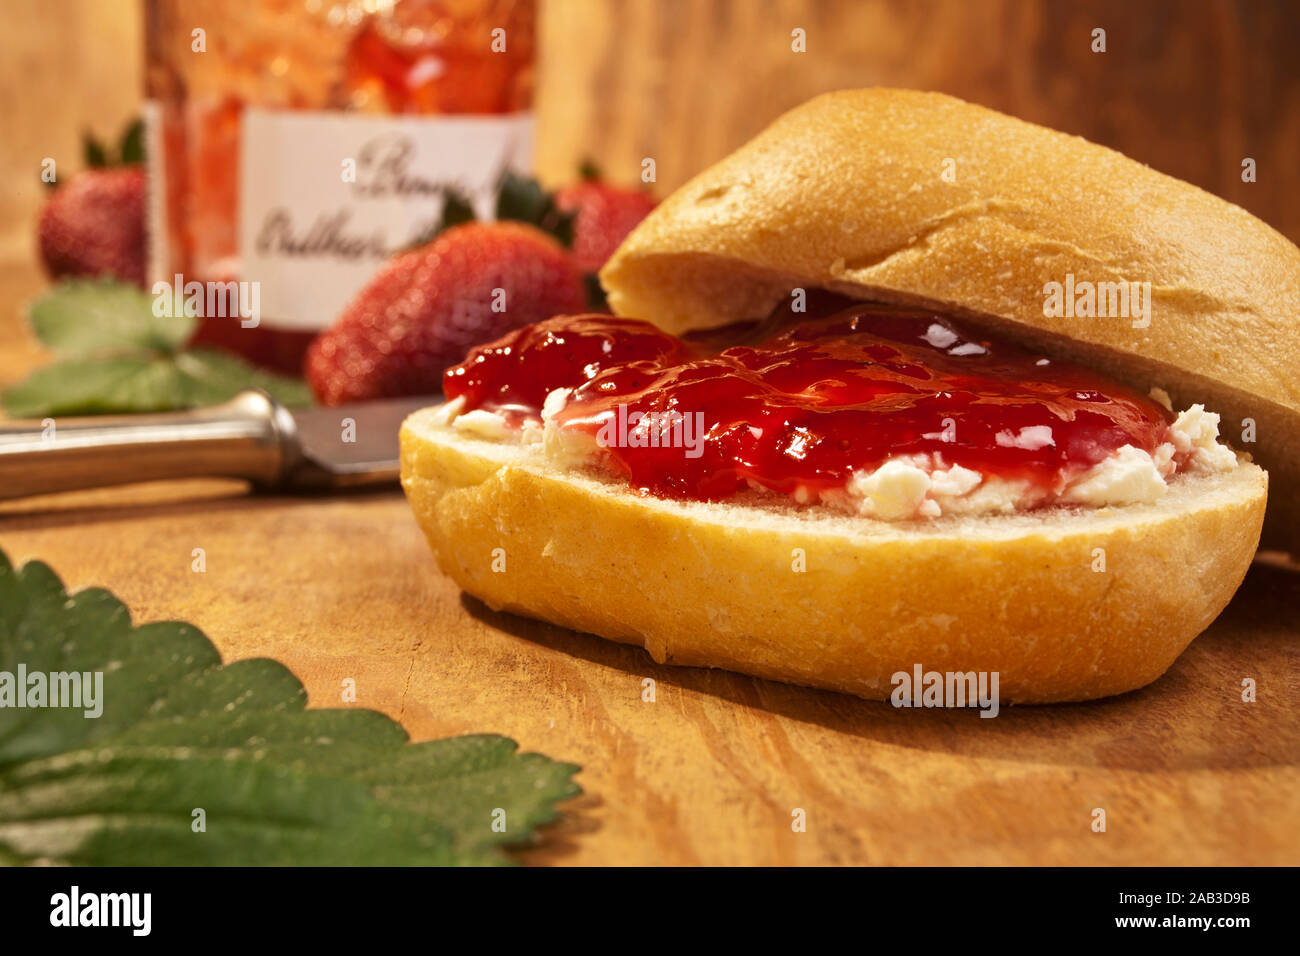 Brötchen mit Frischkäse und frischer Erdbeermarmelade |i rotoli con crema di formaggio fresco e confettura di fragole| Foto Stock